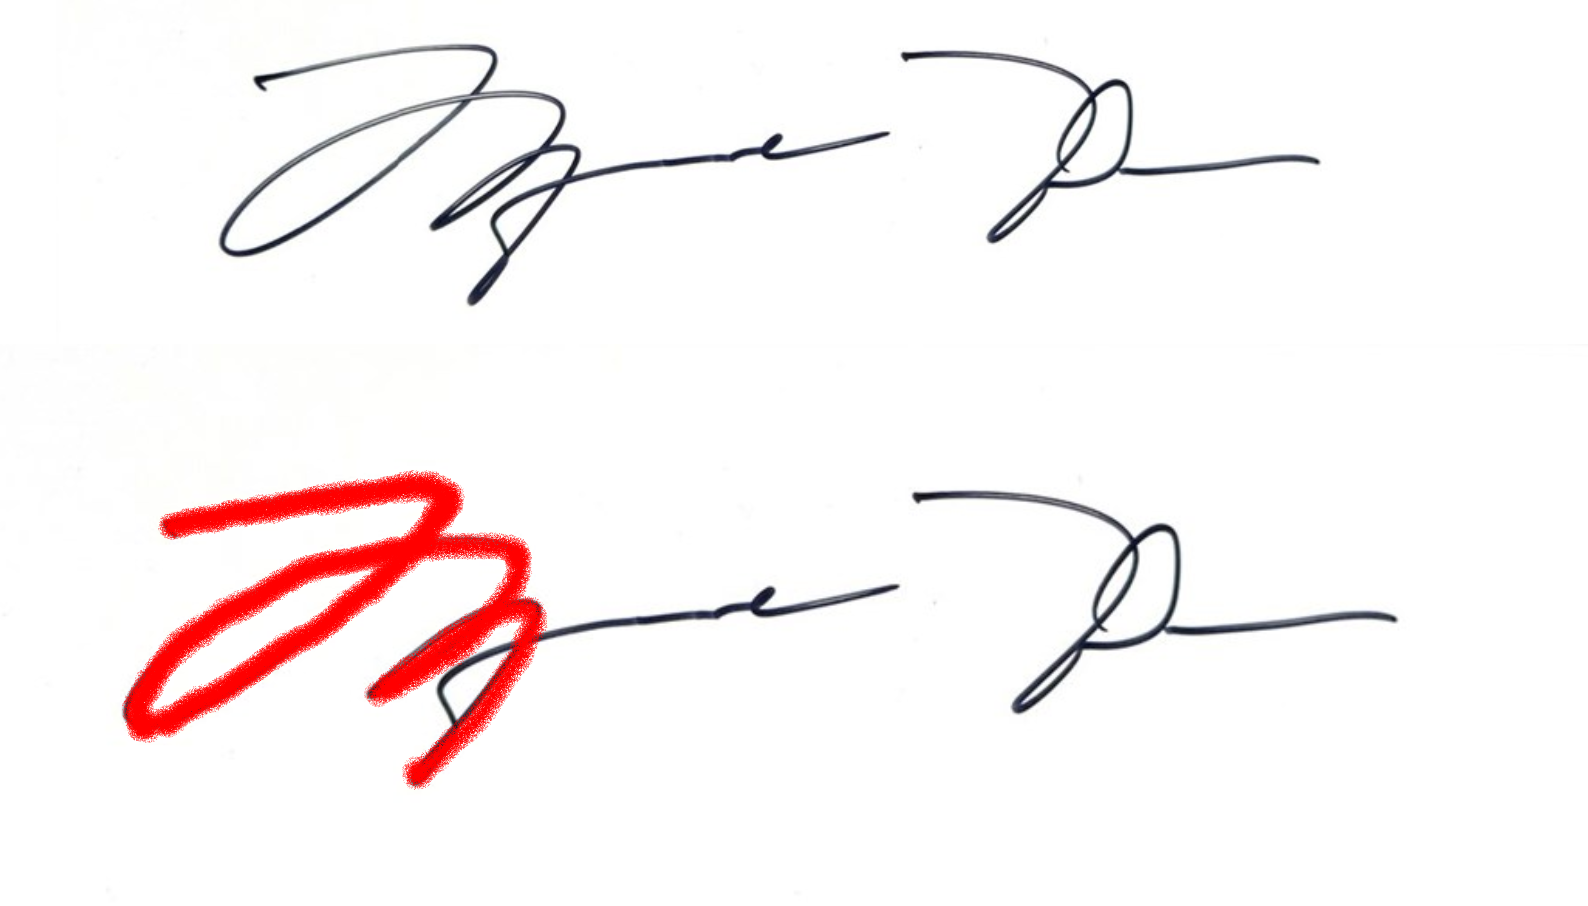 michael jordan signature